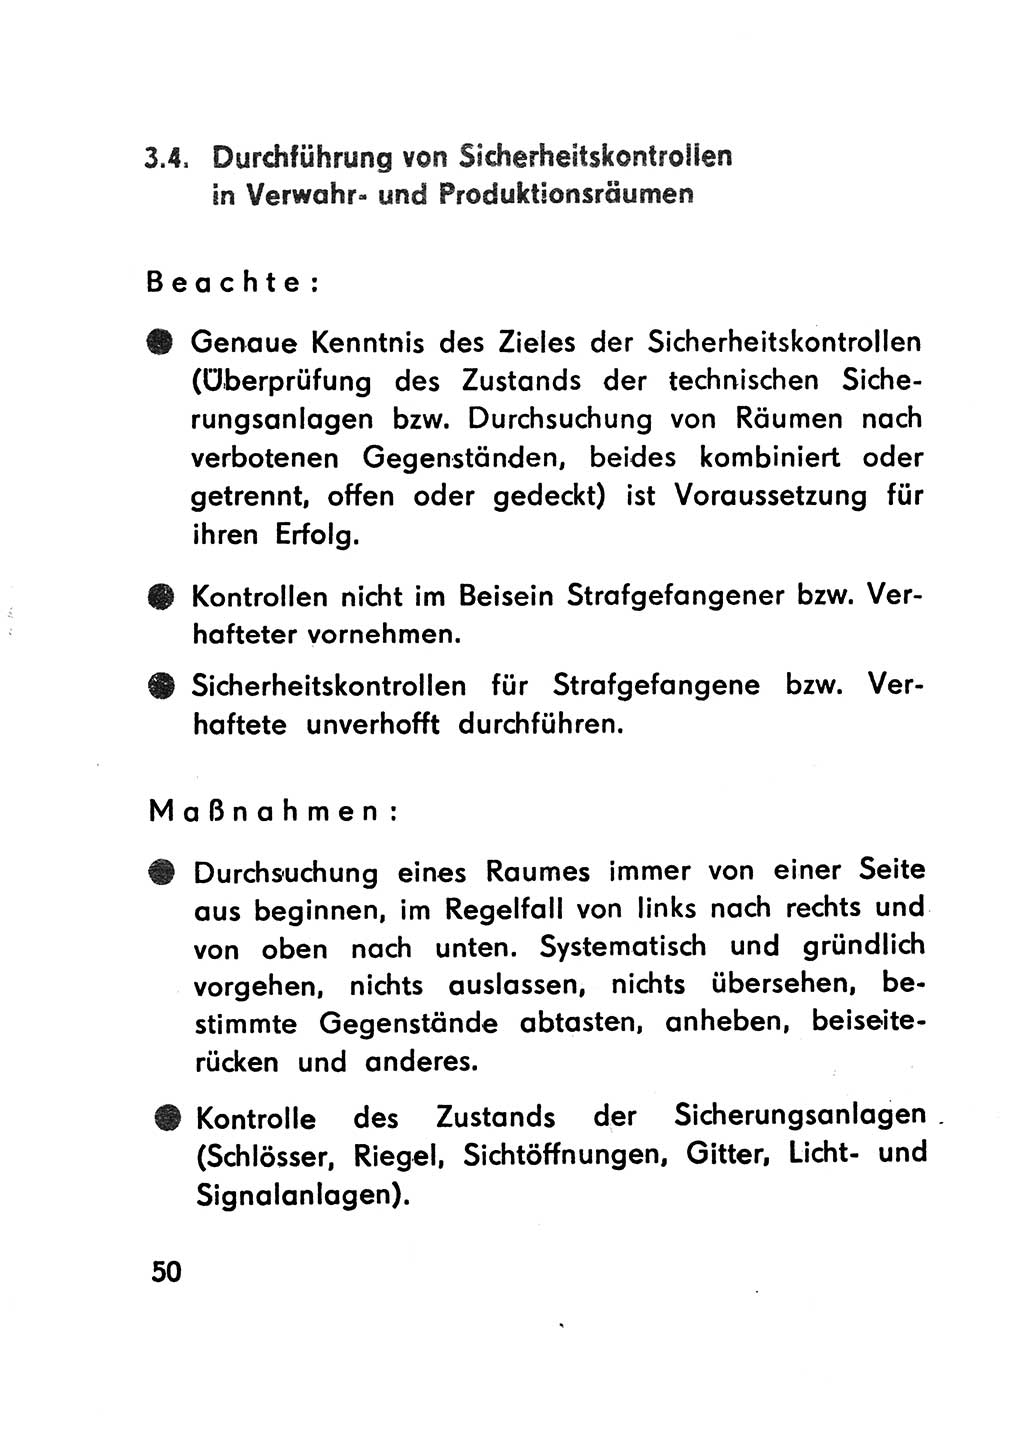 Merkbuch für SV-Angehörige [Strafvollzug (SV) Deutsche Demokratische Republik (DDR)] 1975, Seite 50 (SV-Angeh. DDR 1975, S. 50)